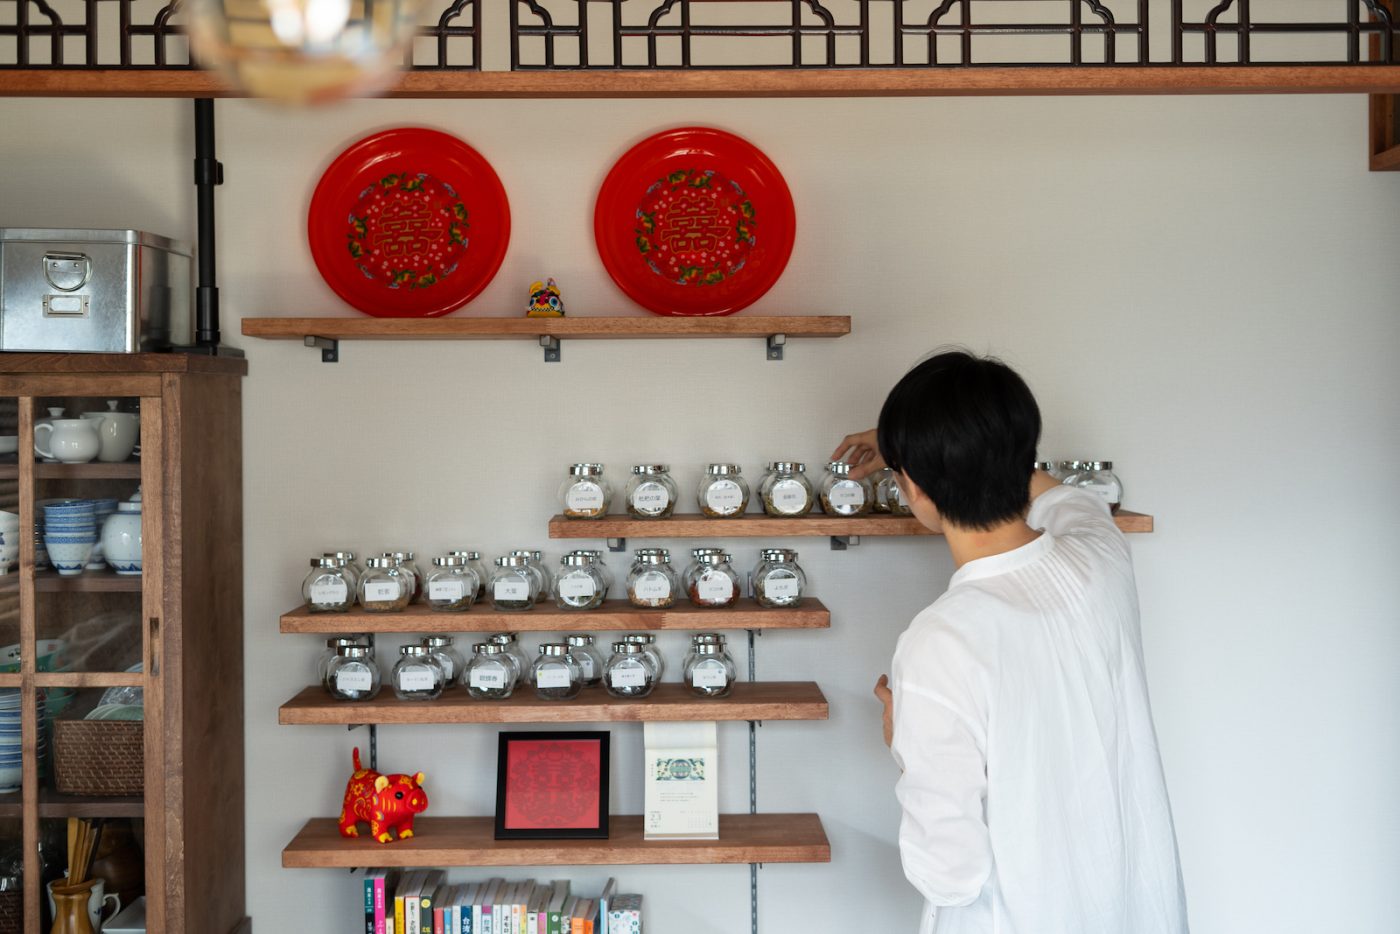 豊富な薬膳が並ぶ棚。鉄製の飾り格子や赤を貴重としたインテリアが台湾っぽさを演出します。